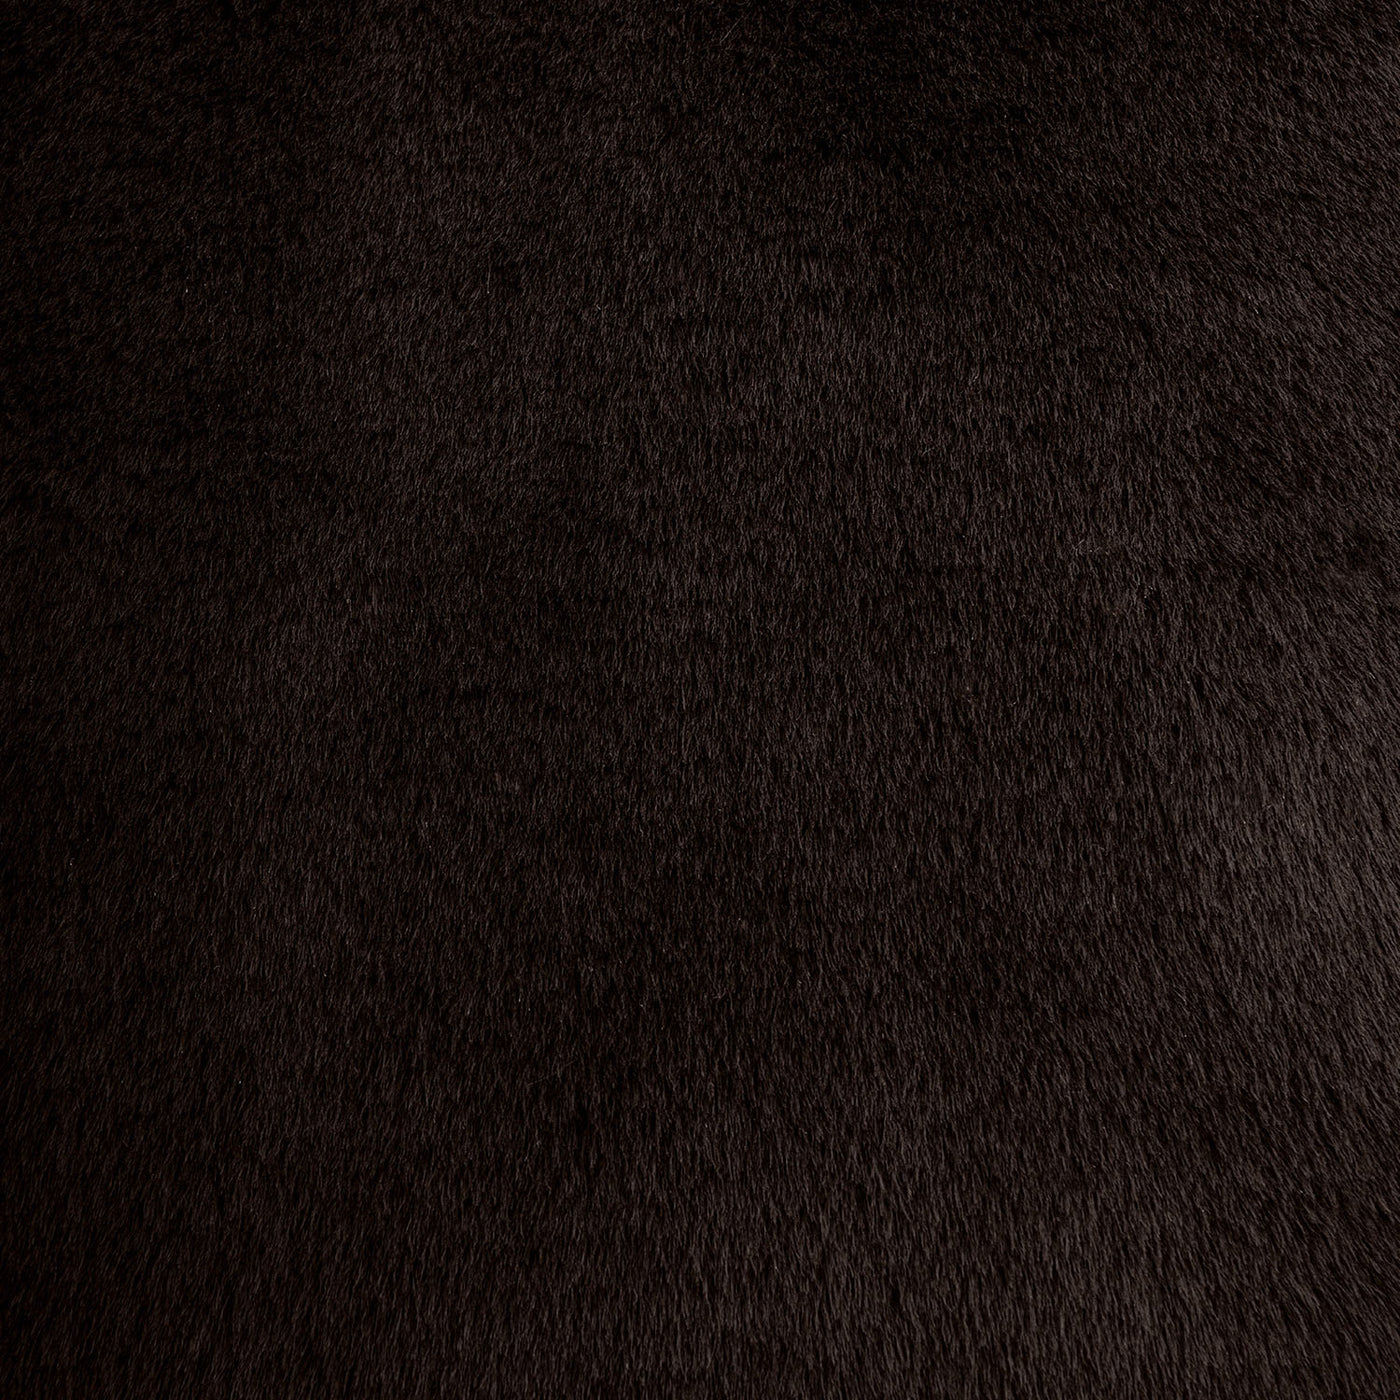 Produktbild braunes Hundekissen aus Webpelz und italienischem Samt. Very Close-up view des Faux Furs.